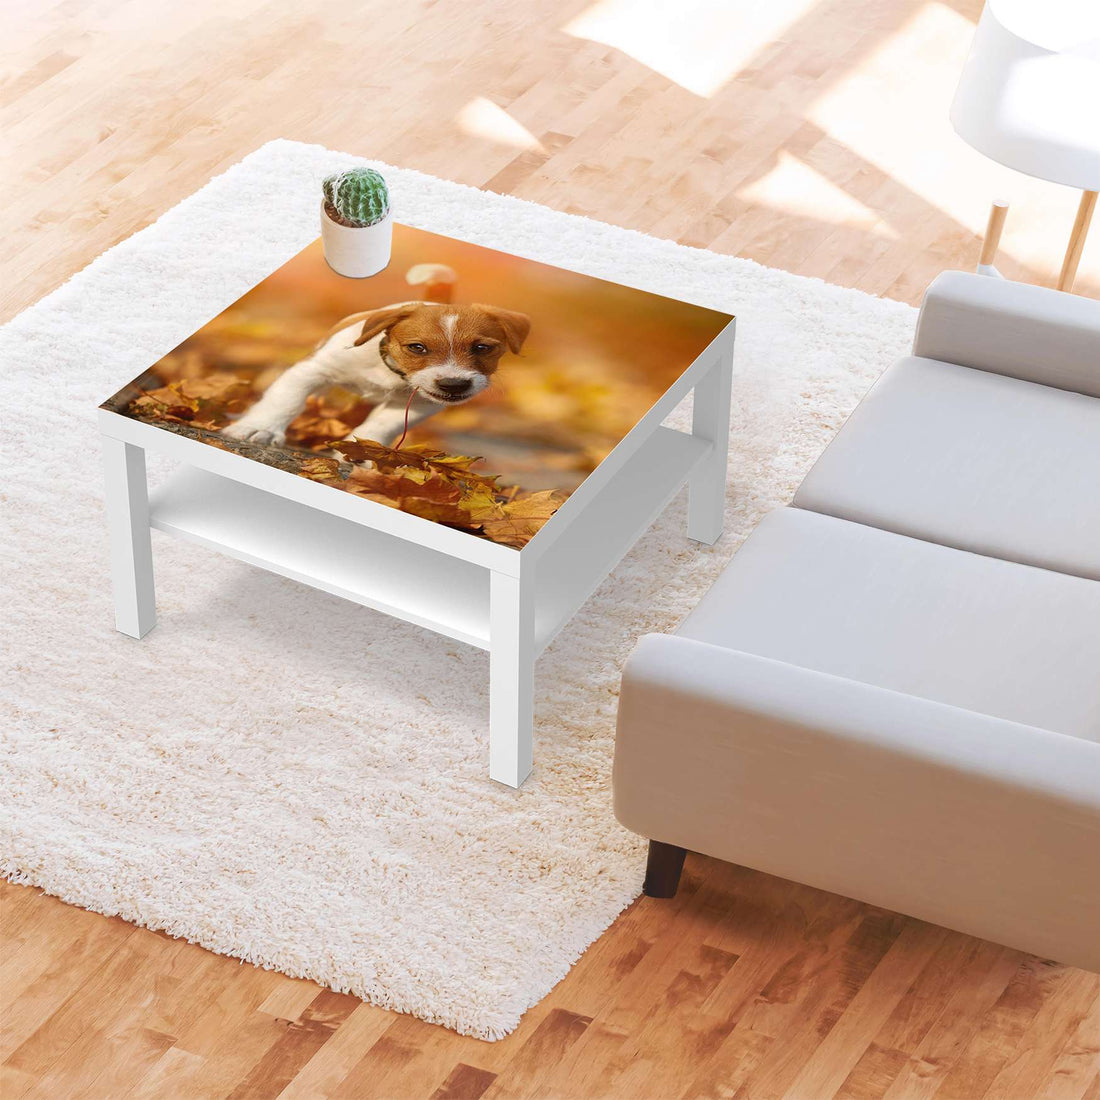 Selbstklebende Folie Jack the Puppy - IKEA Lack Tisch 78x78 cm - Wohnzimmer